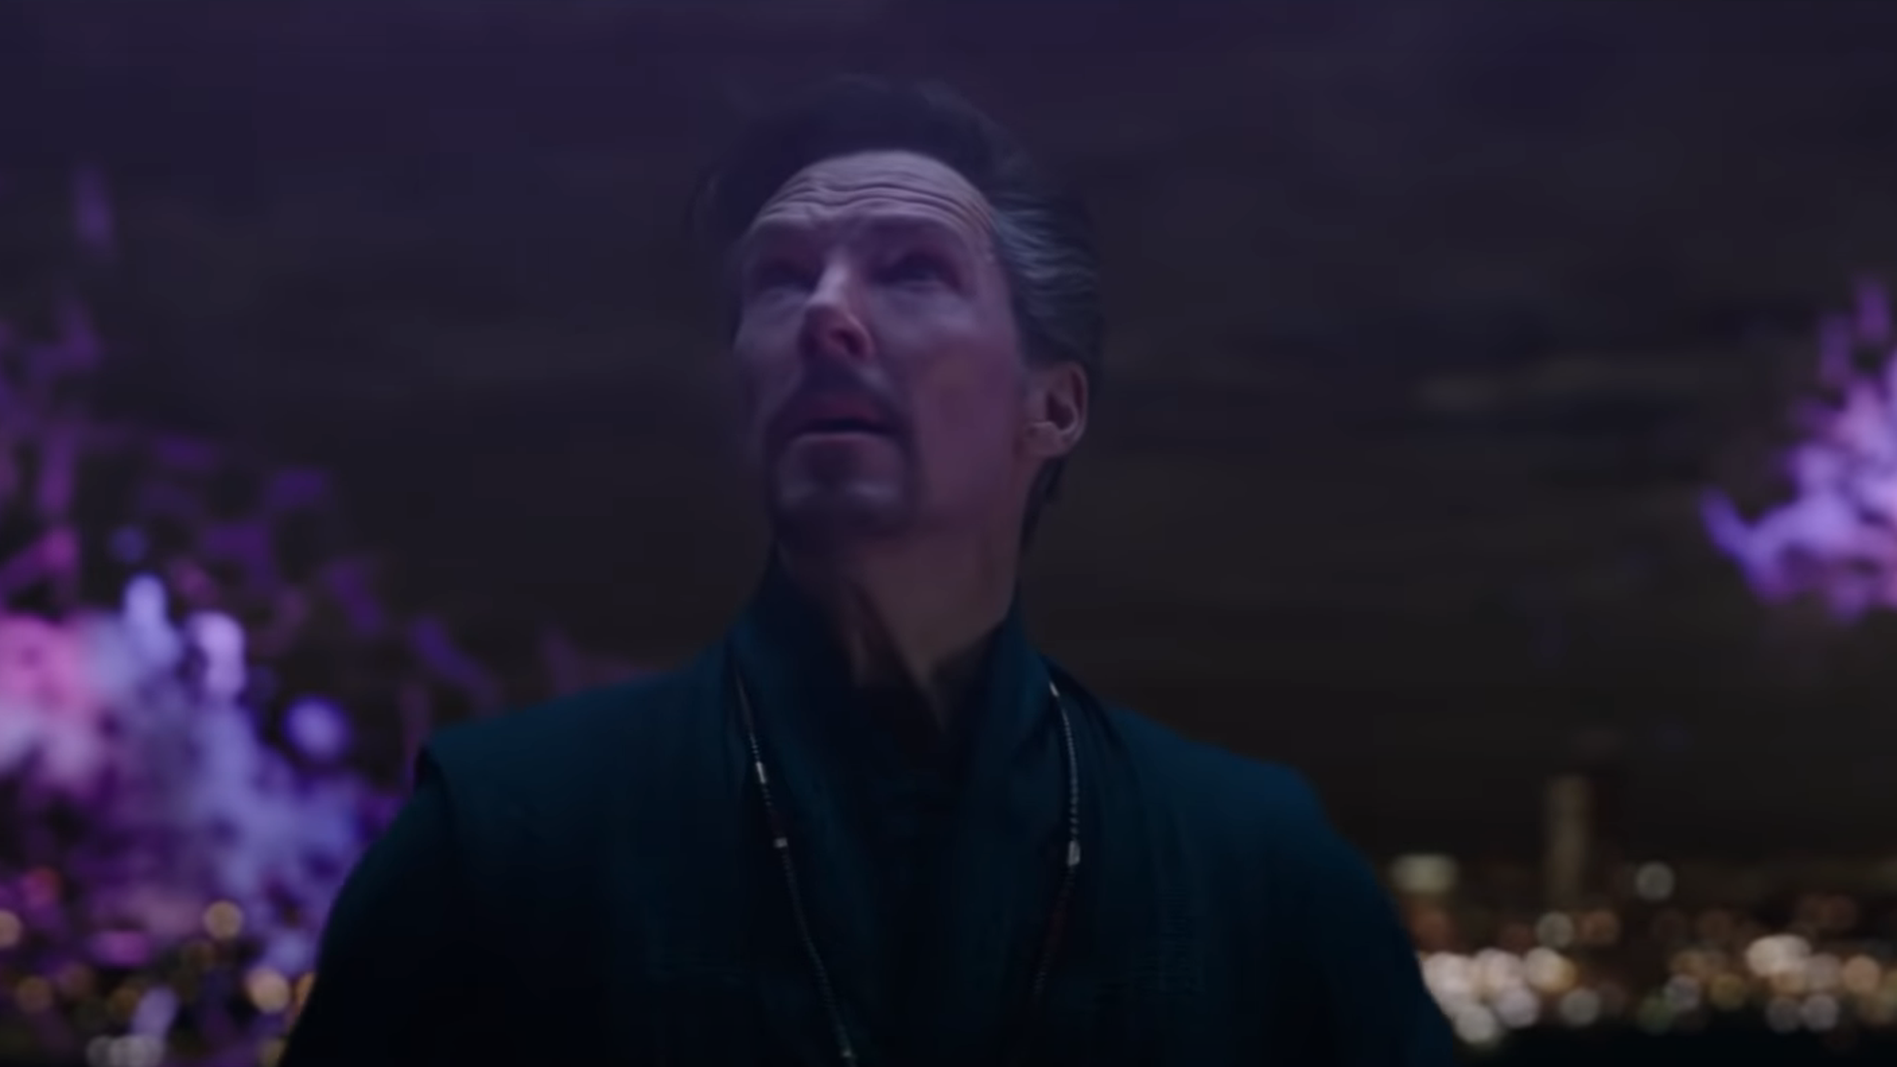 Doutor Estranho 2': Benedict diz que Homem-Aranha quebrou multiverso